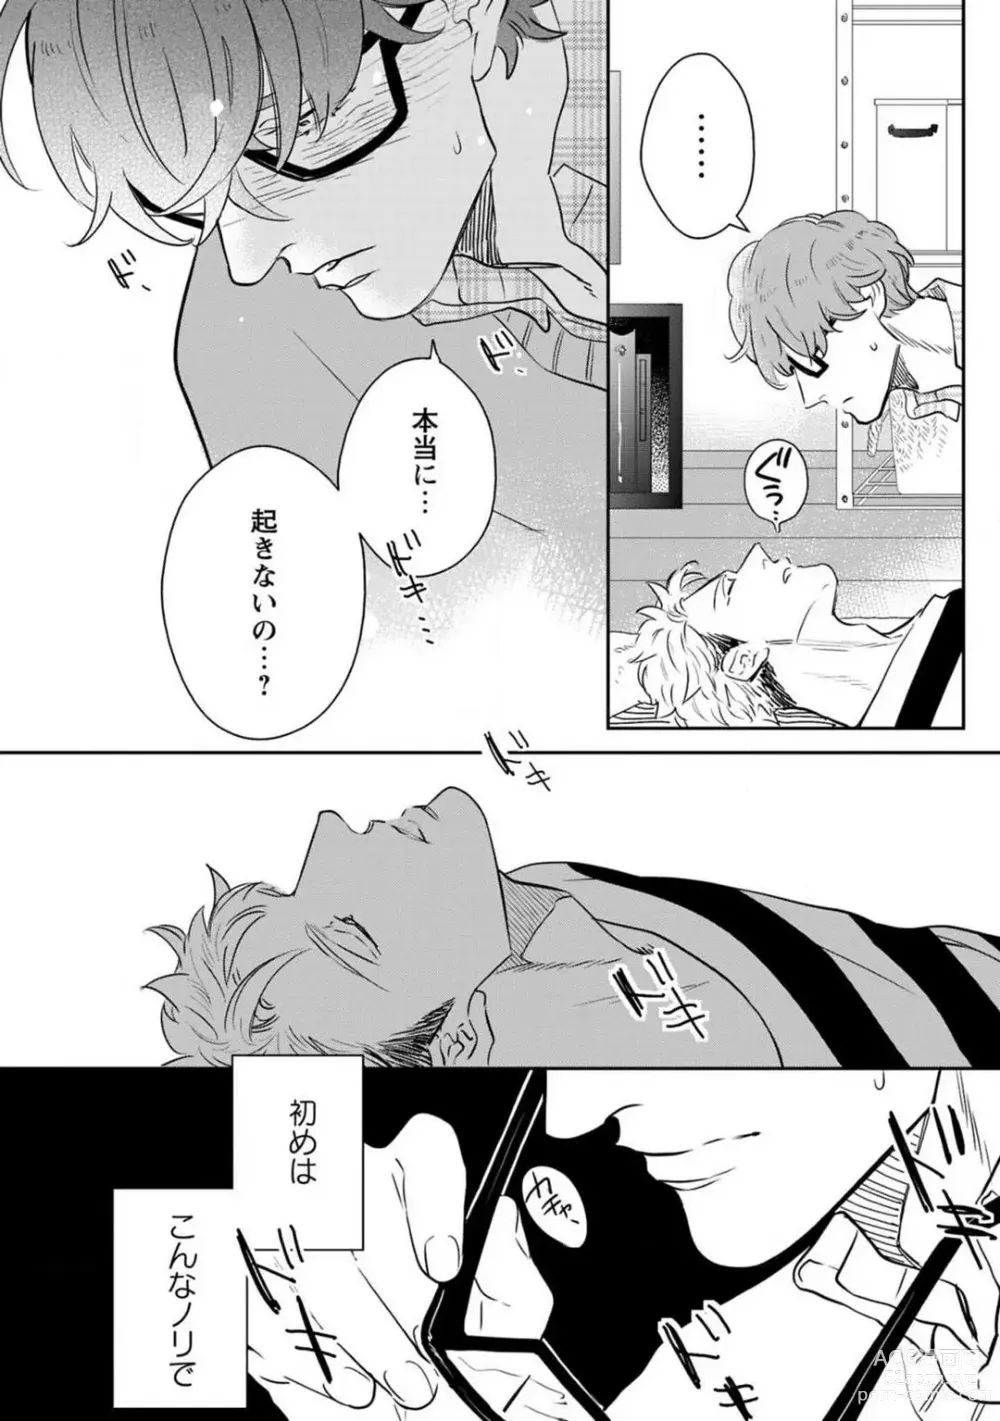 Page 9 of manga Kimi no Shiranai xx